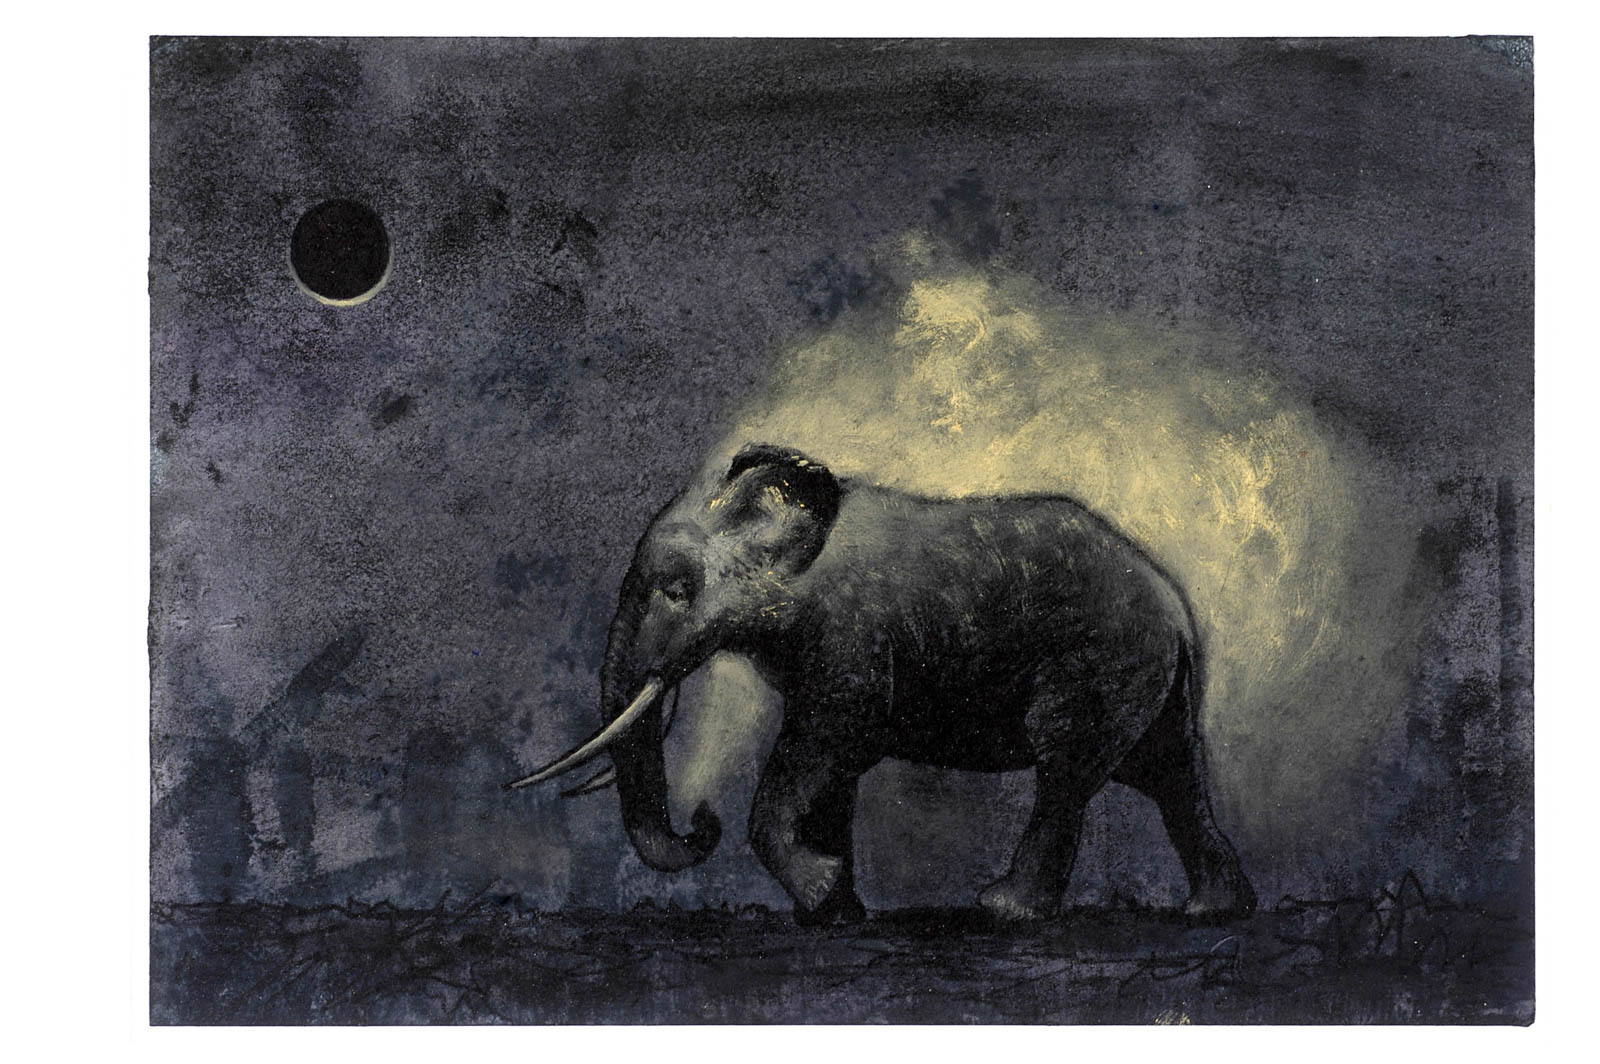 Uwe Hand - Der Elefant parfümiert sich um Mitternacht, 2008